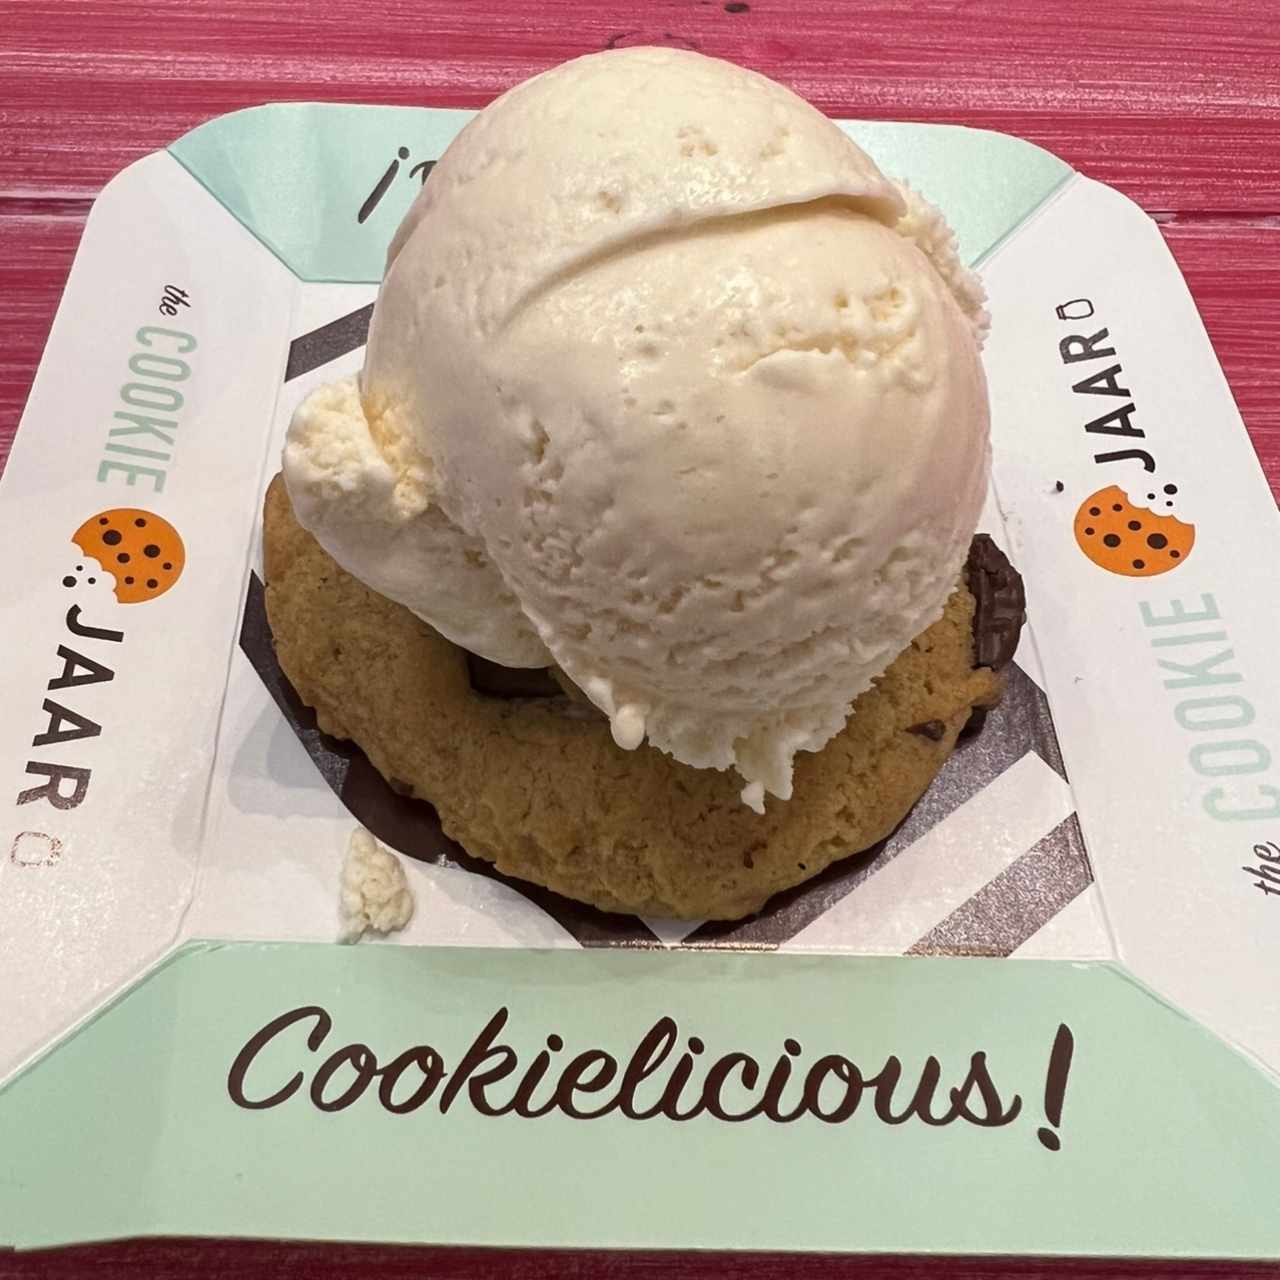 Chocolate chip cookie con helado de vainilla